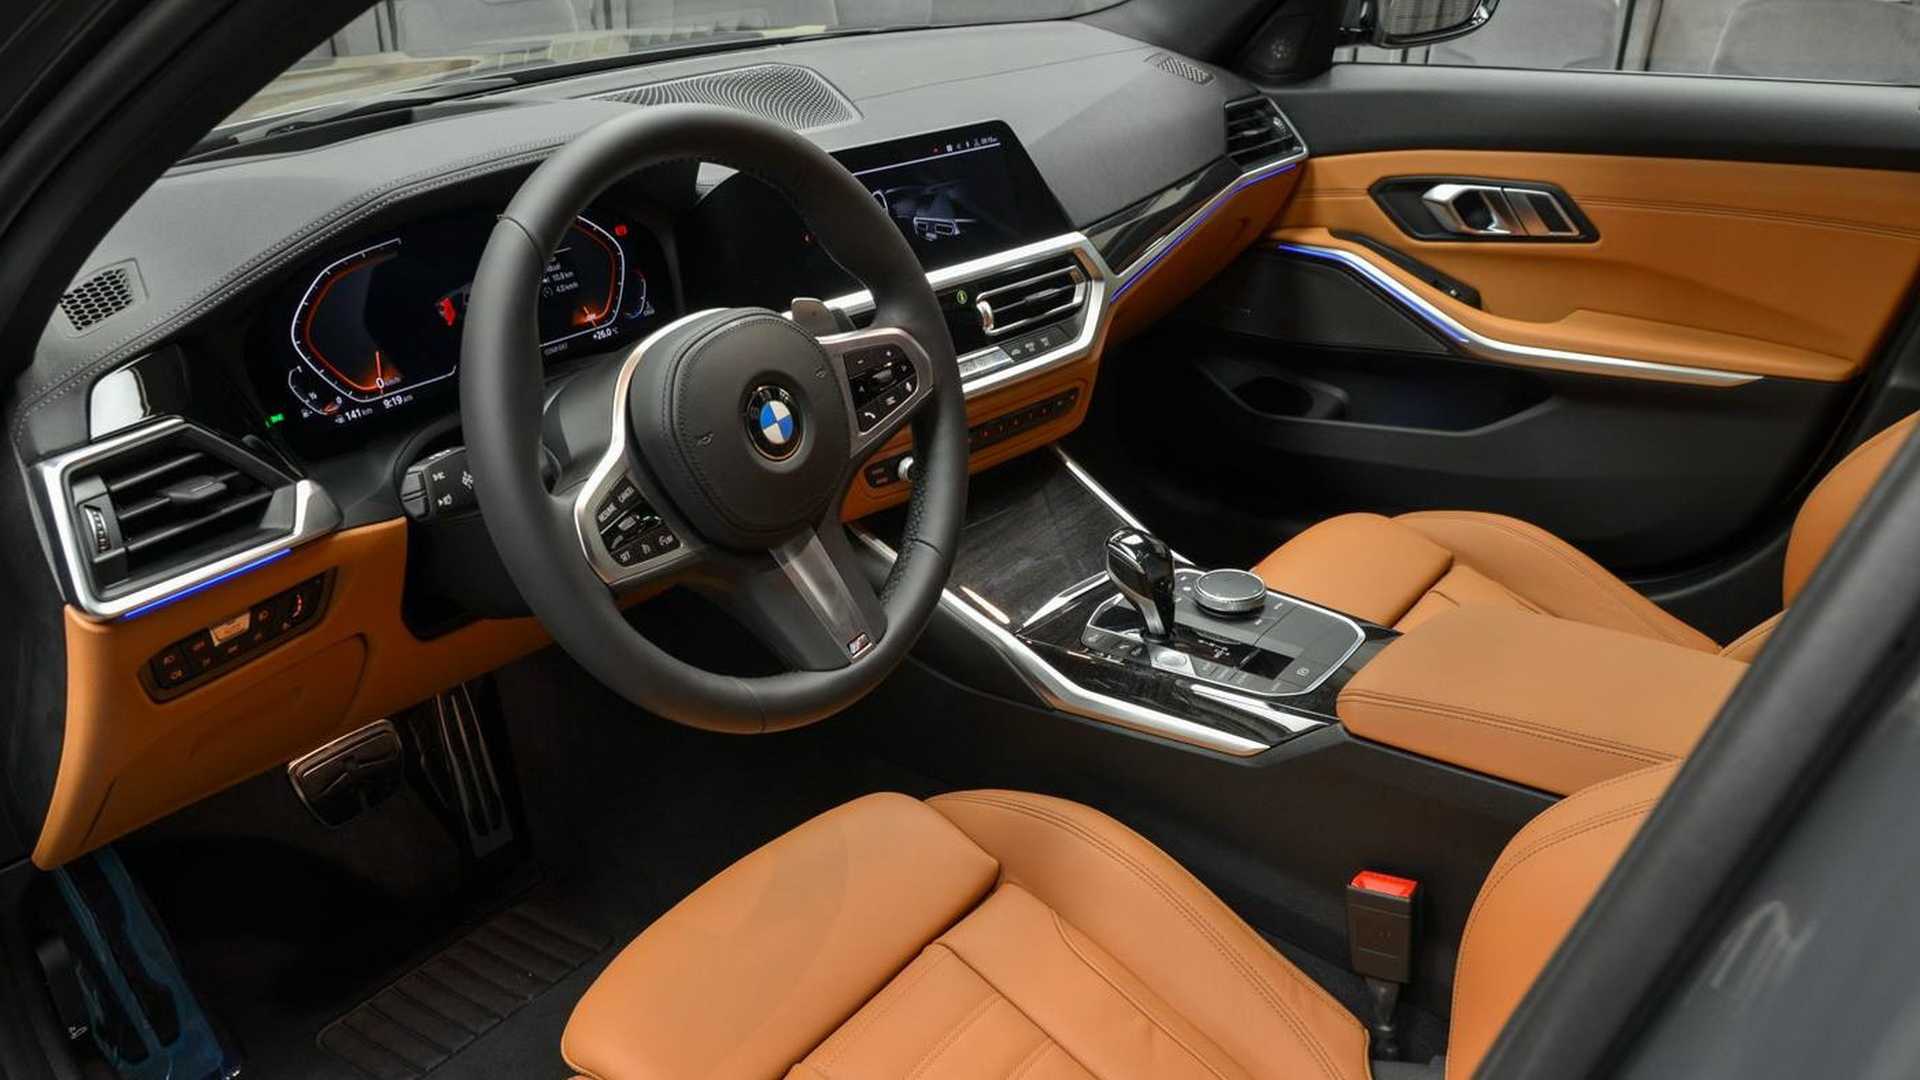 Hình ảnh BMW 330i đẹp lung linh chất lượng cao 5